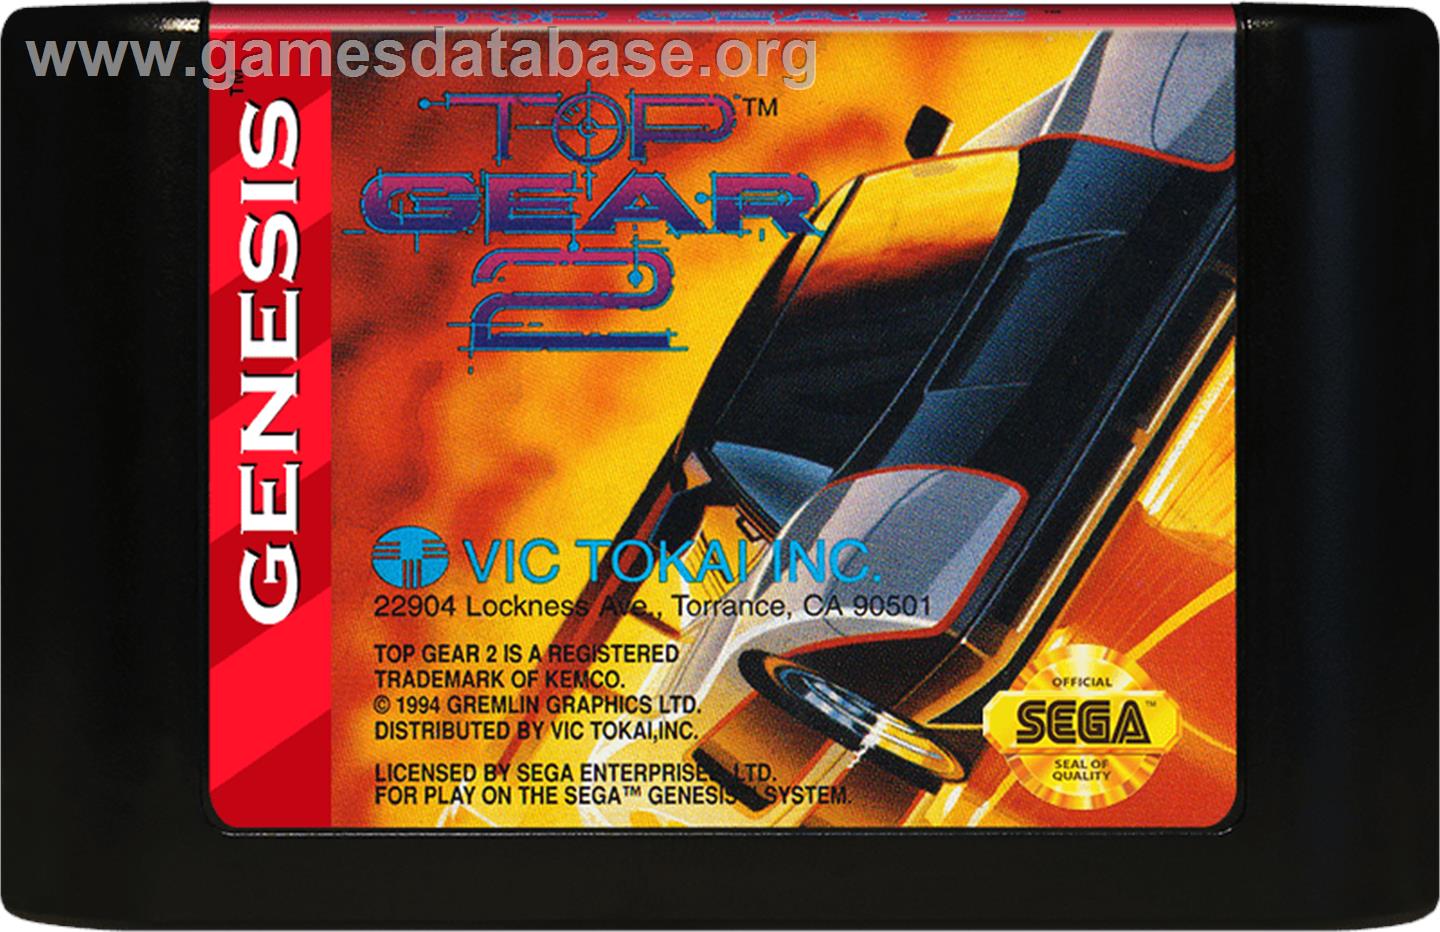 Top Gear 2 - Sega Genesis - Artwork - Cartridge